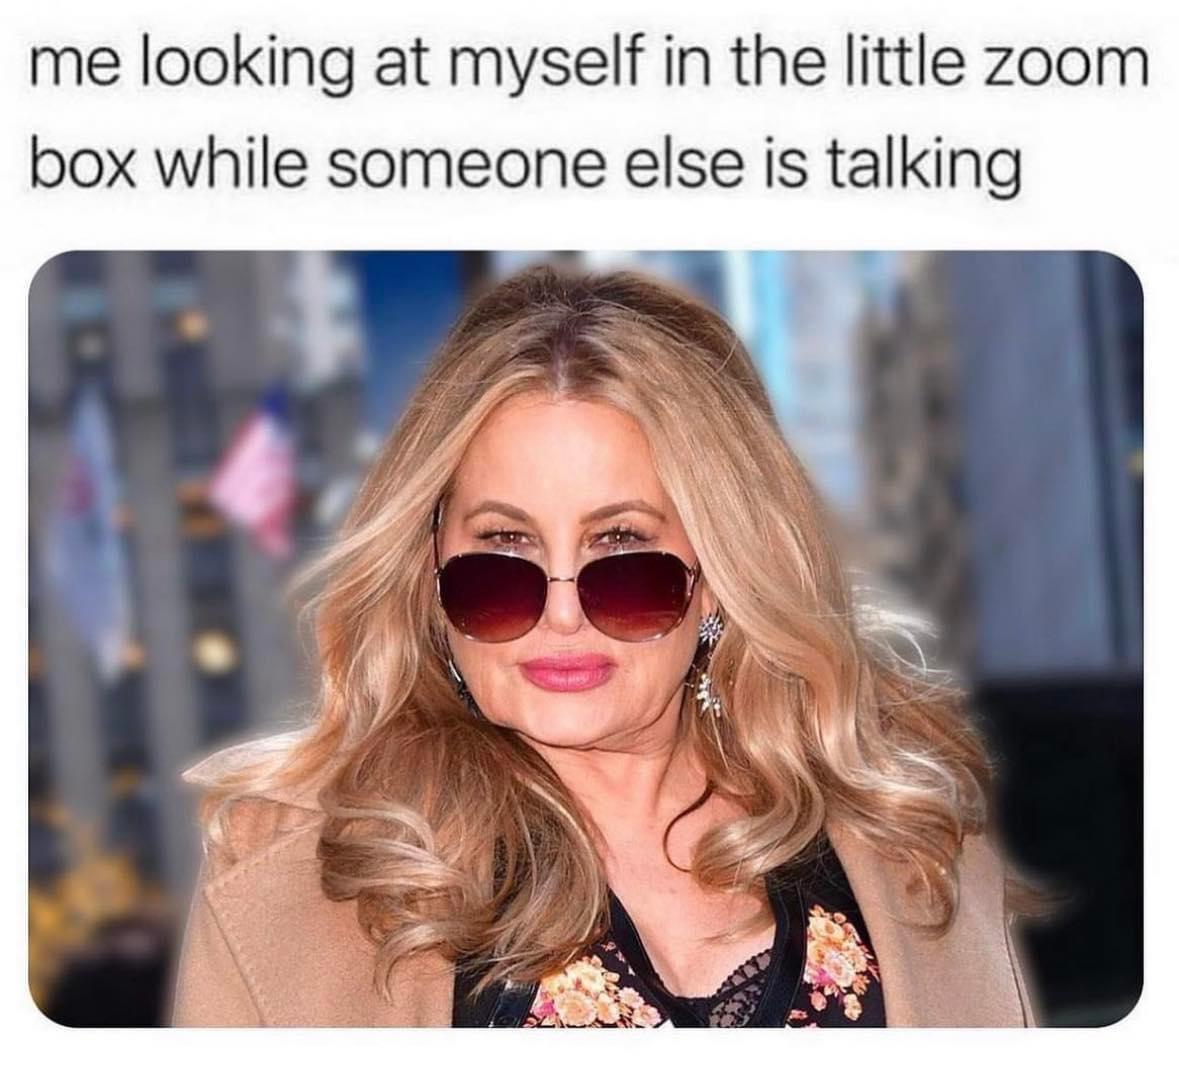 dank memes - me looking at myself in the zoom box - me looking at myself in the little zoom box while someone else is talking